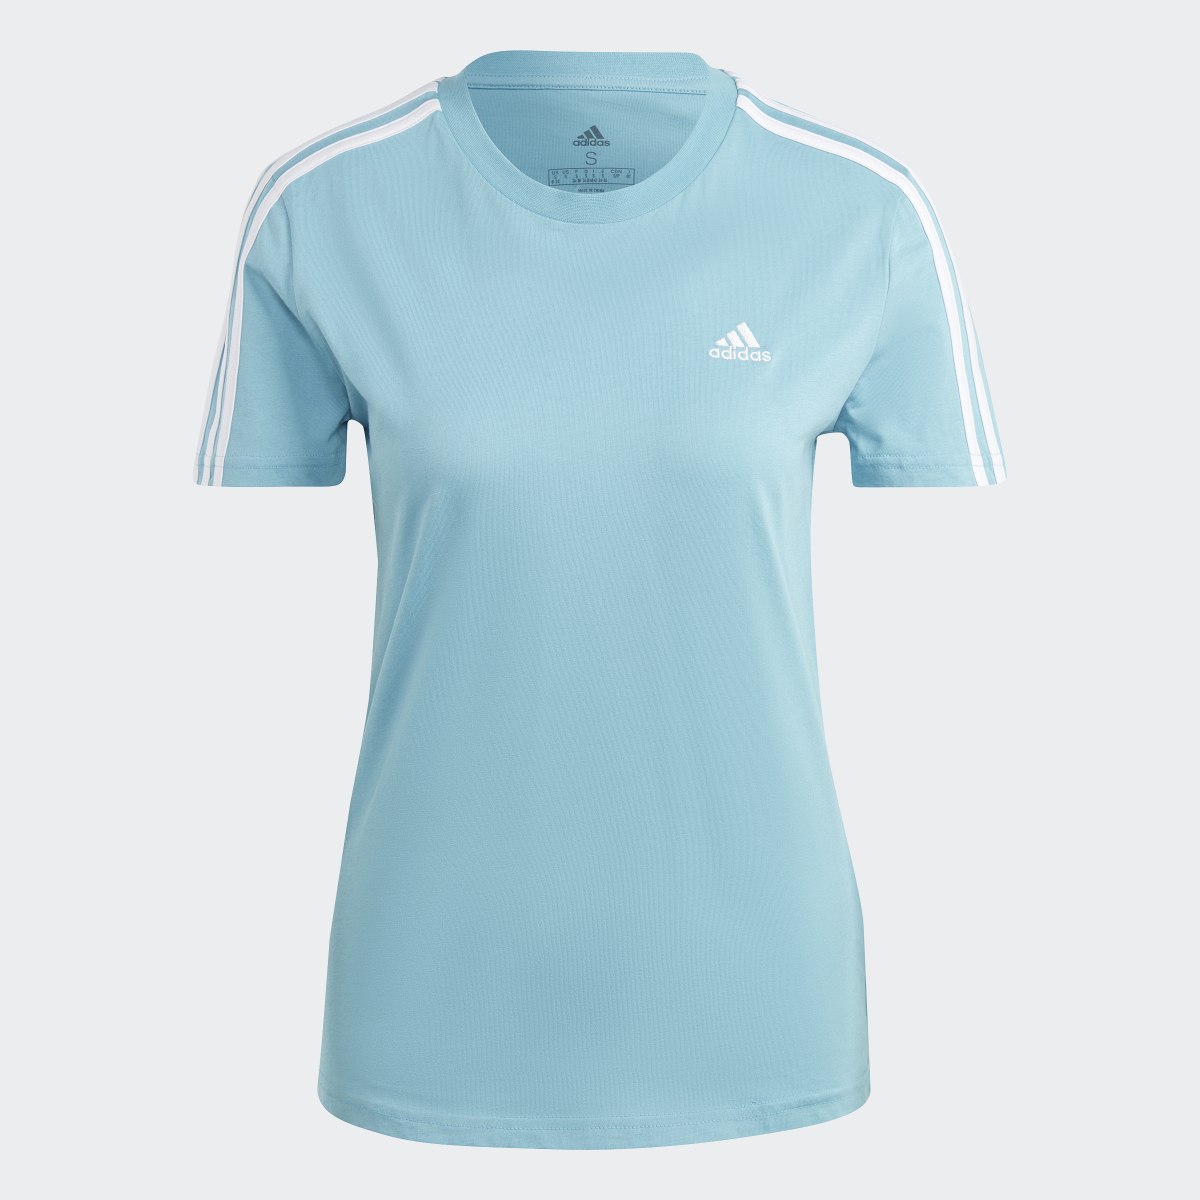 Adidas LOUNGEWEAR Essentials Slim 3-Streifen T-Shirt. 5